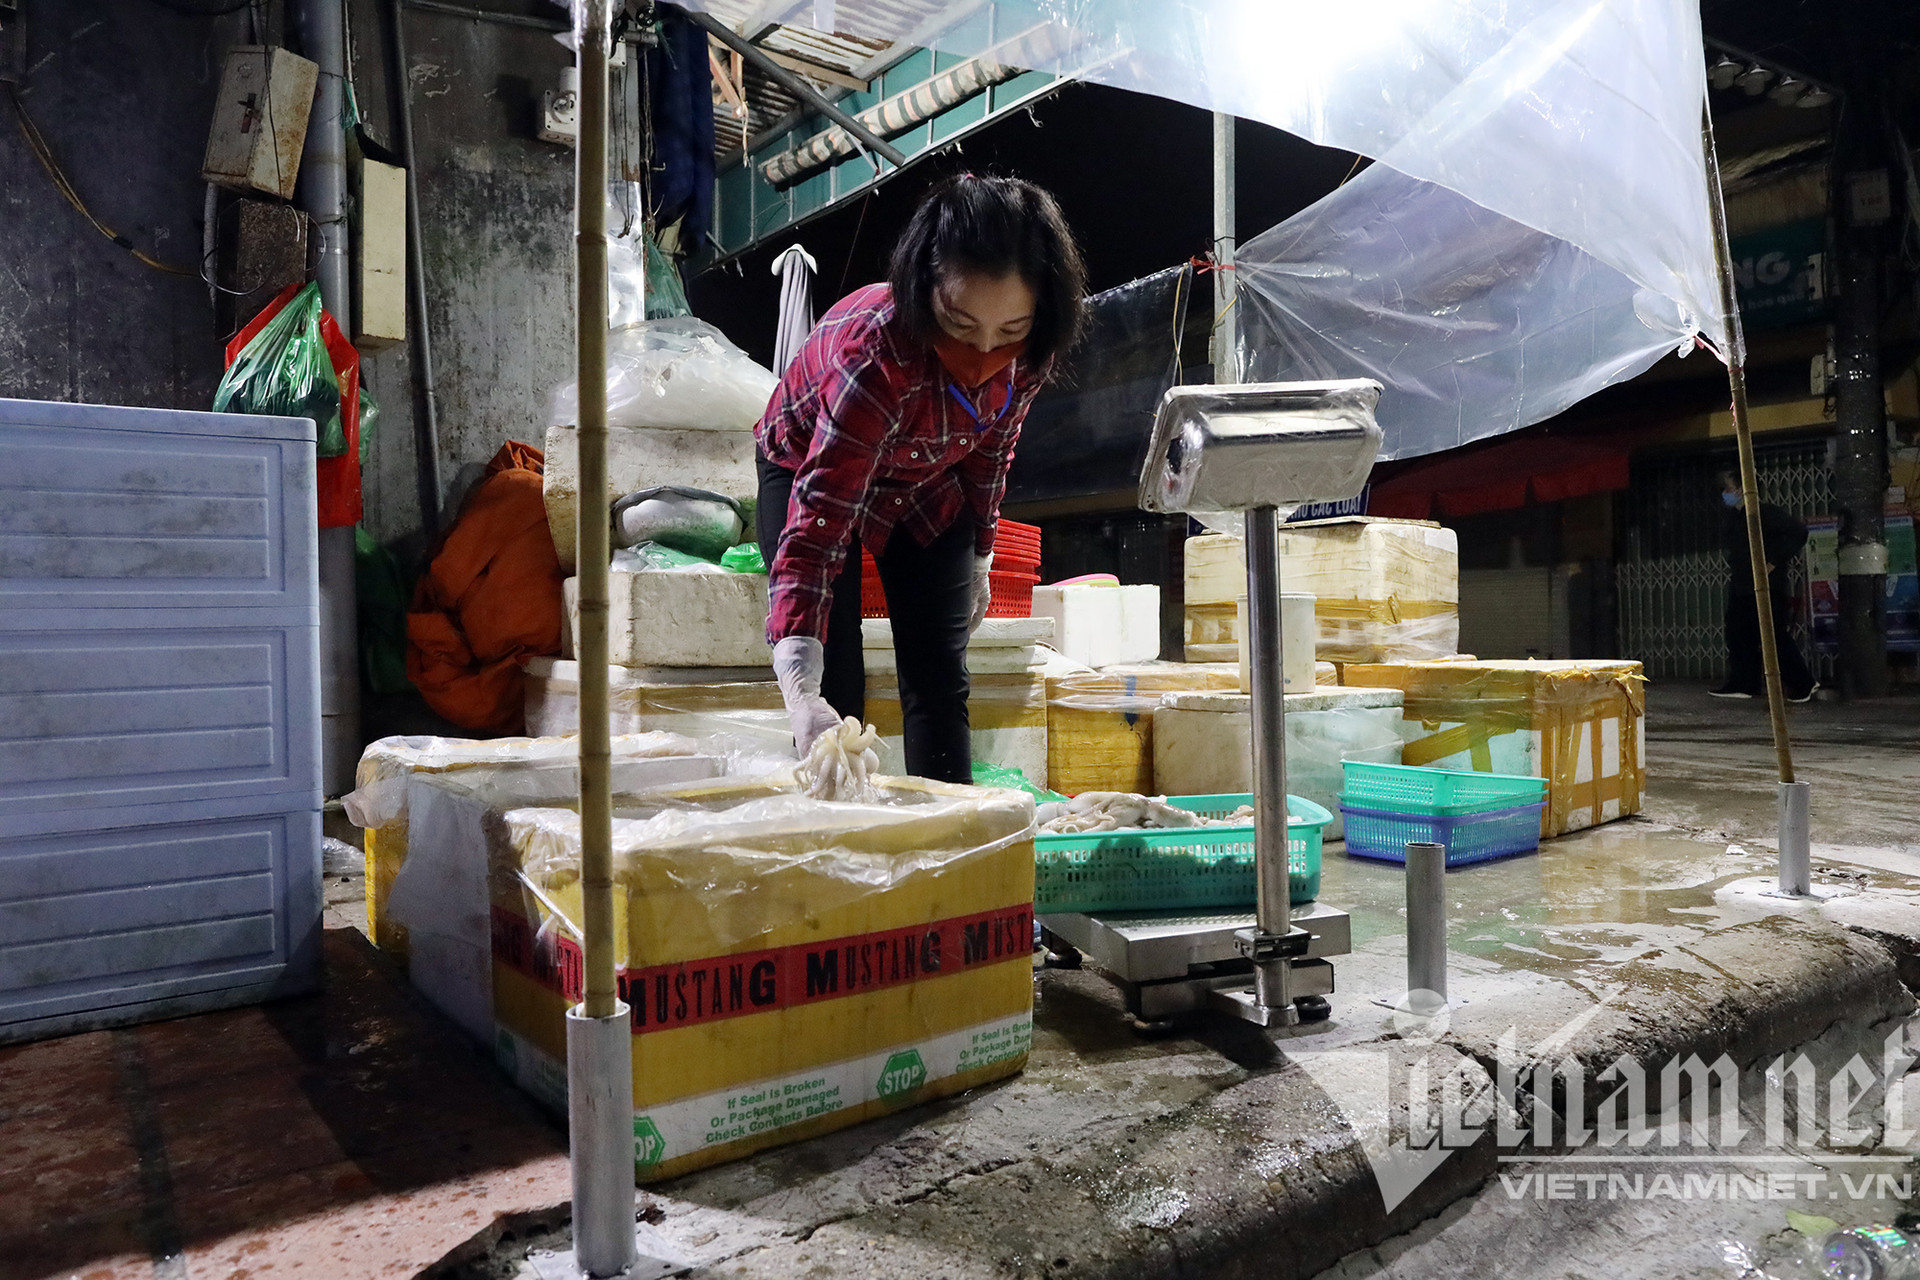 Chợ đầu mối nổi tiếng nhất Hà Nội mở lại sau hai tháng đóng cửa - Ảnh 9.